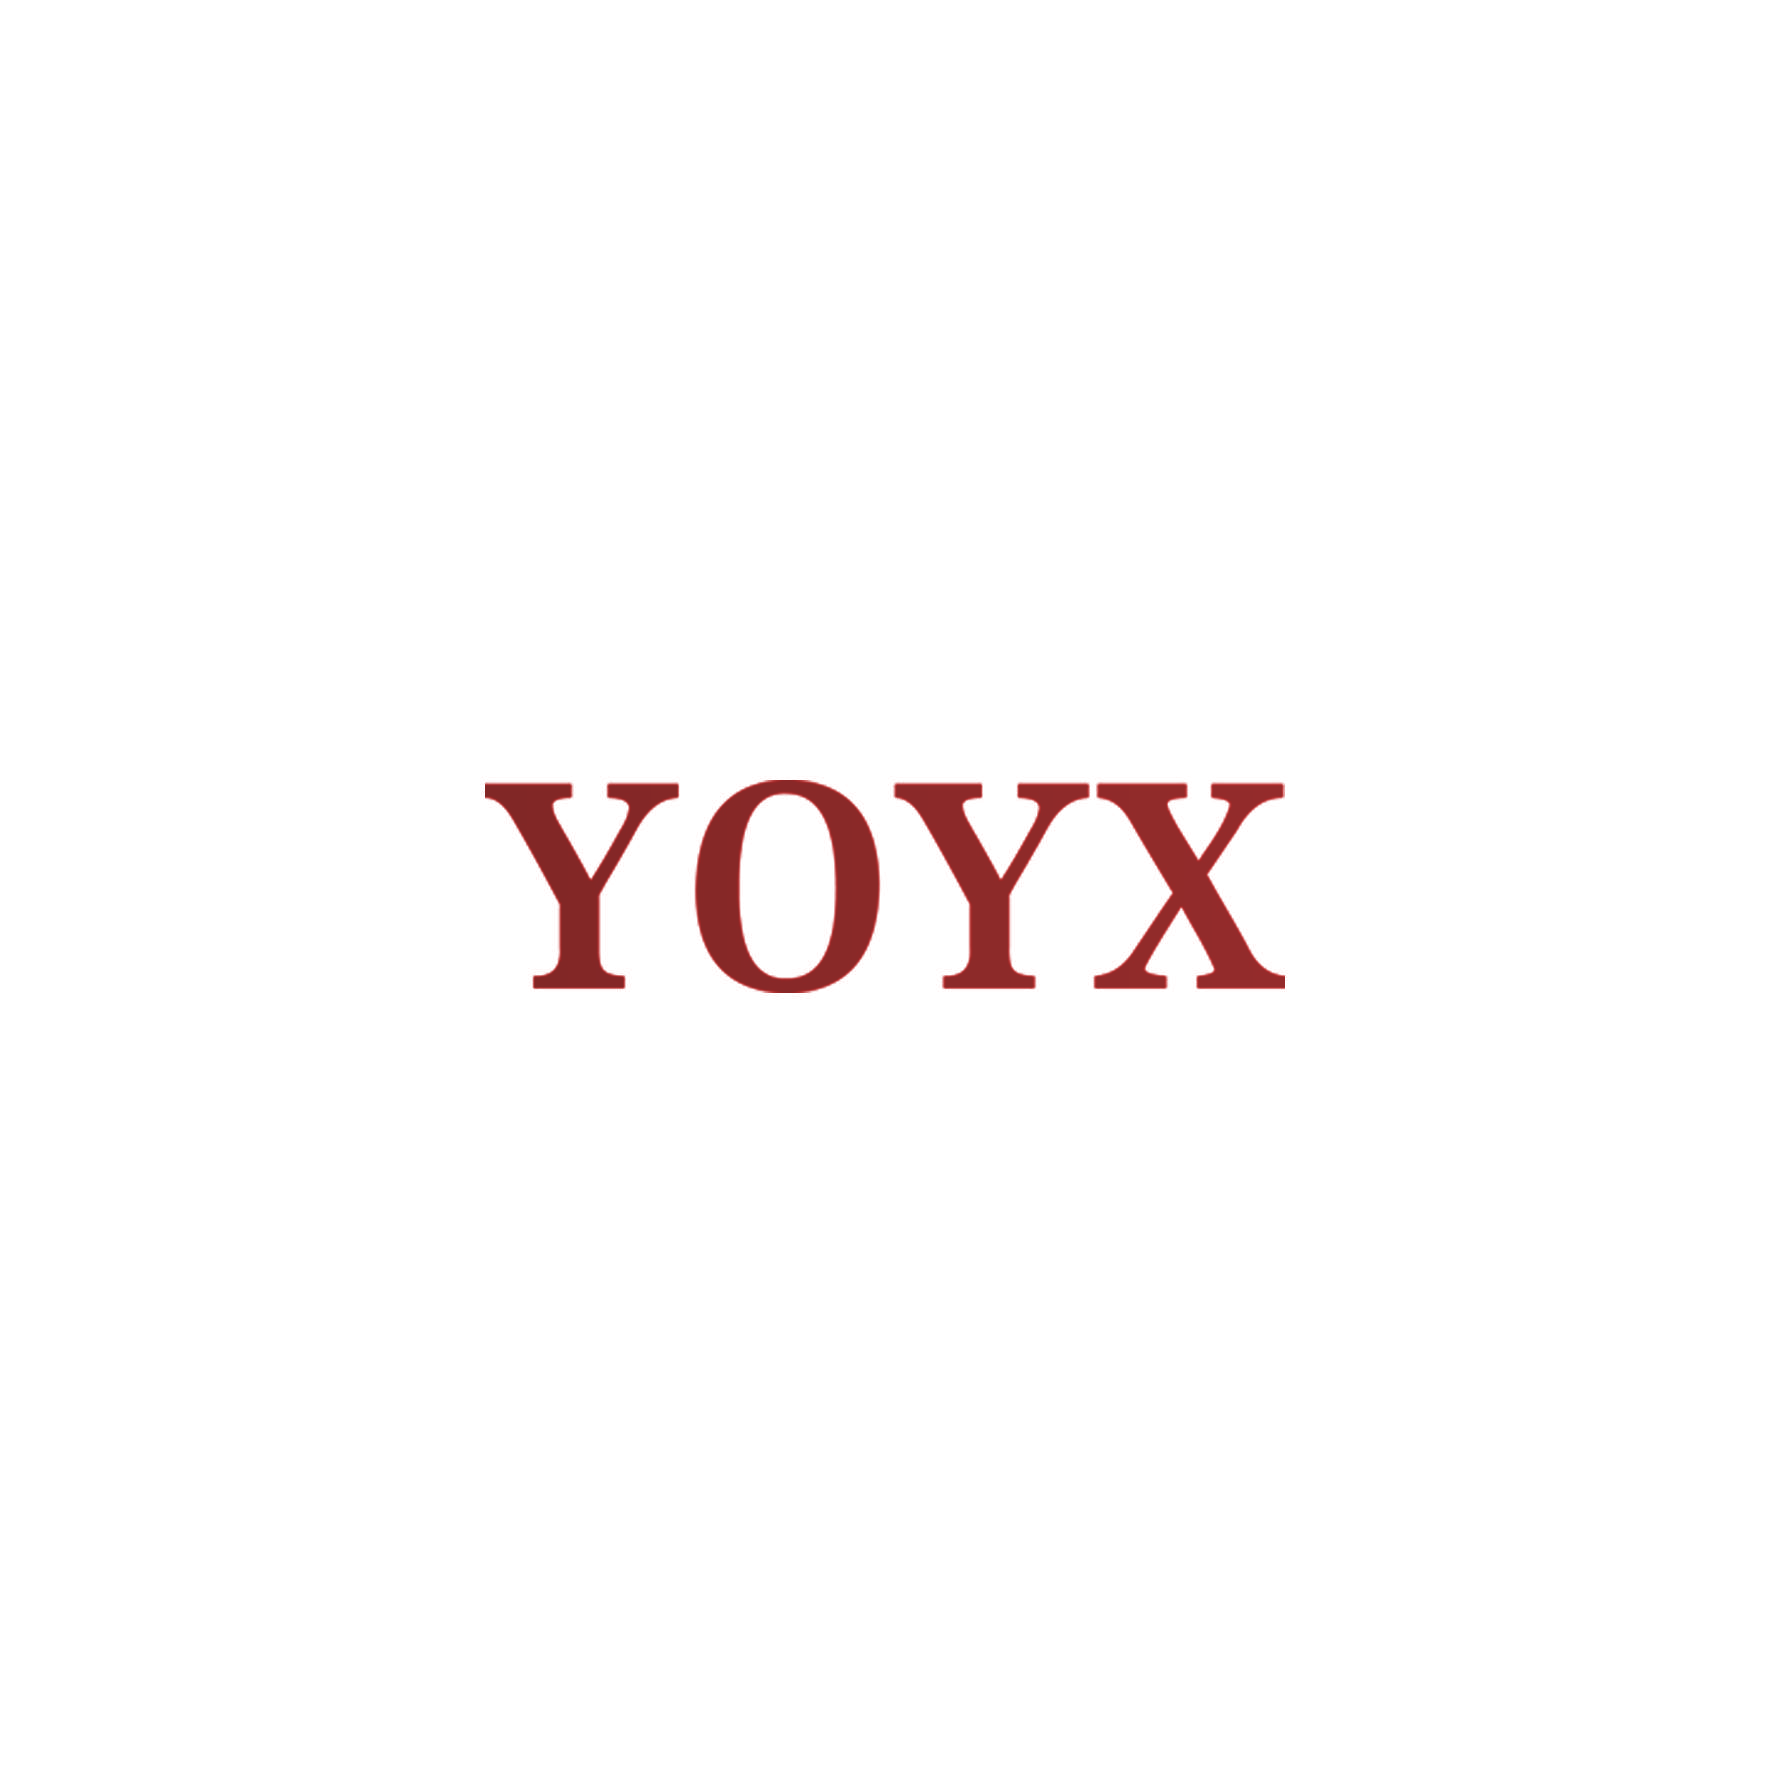 YOYX